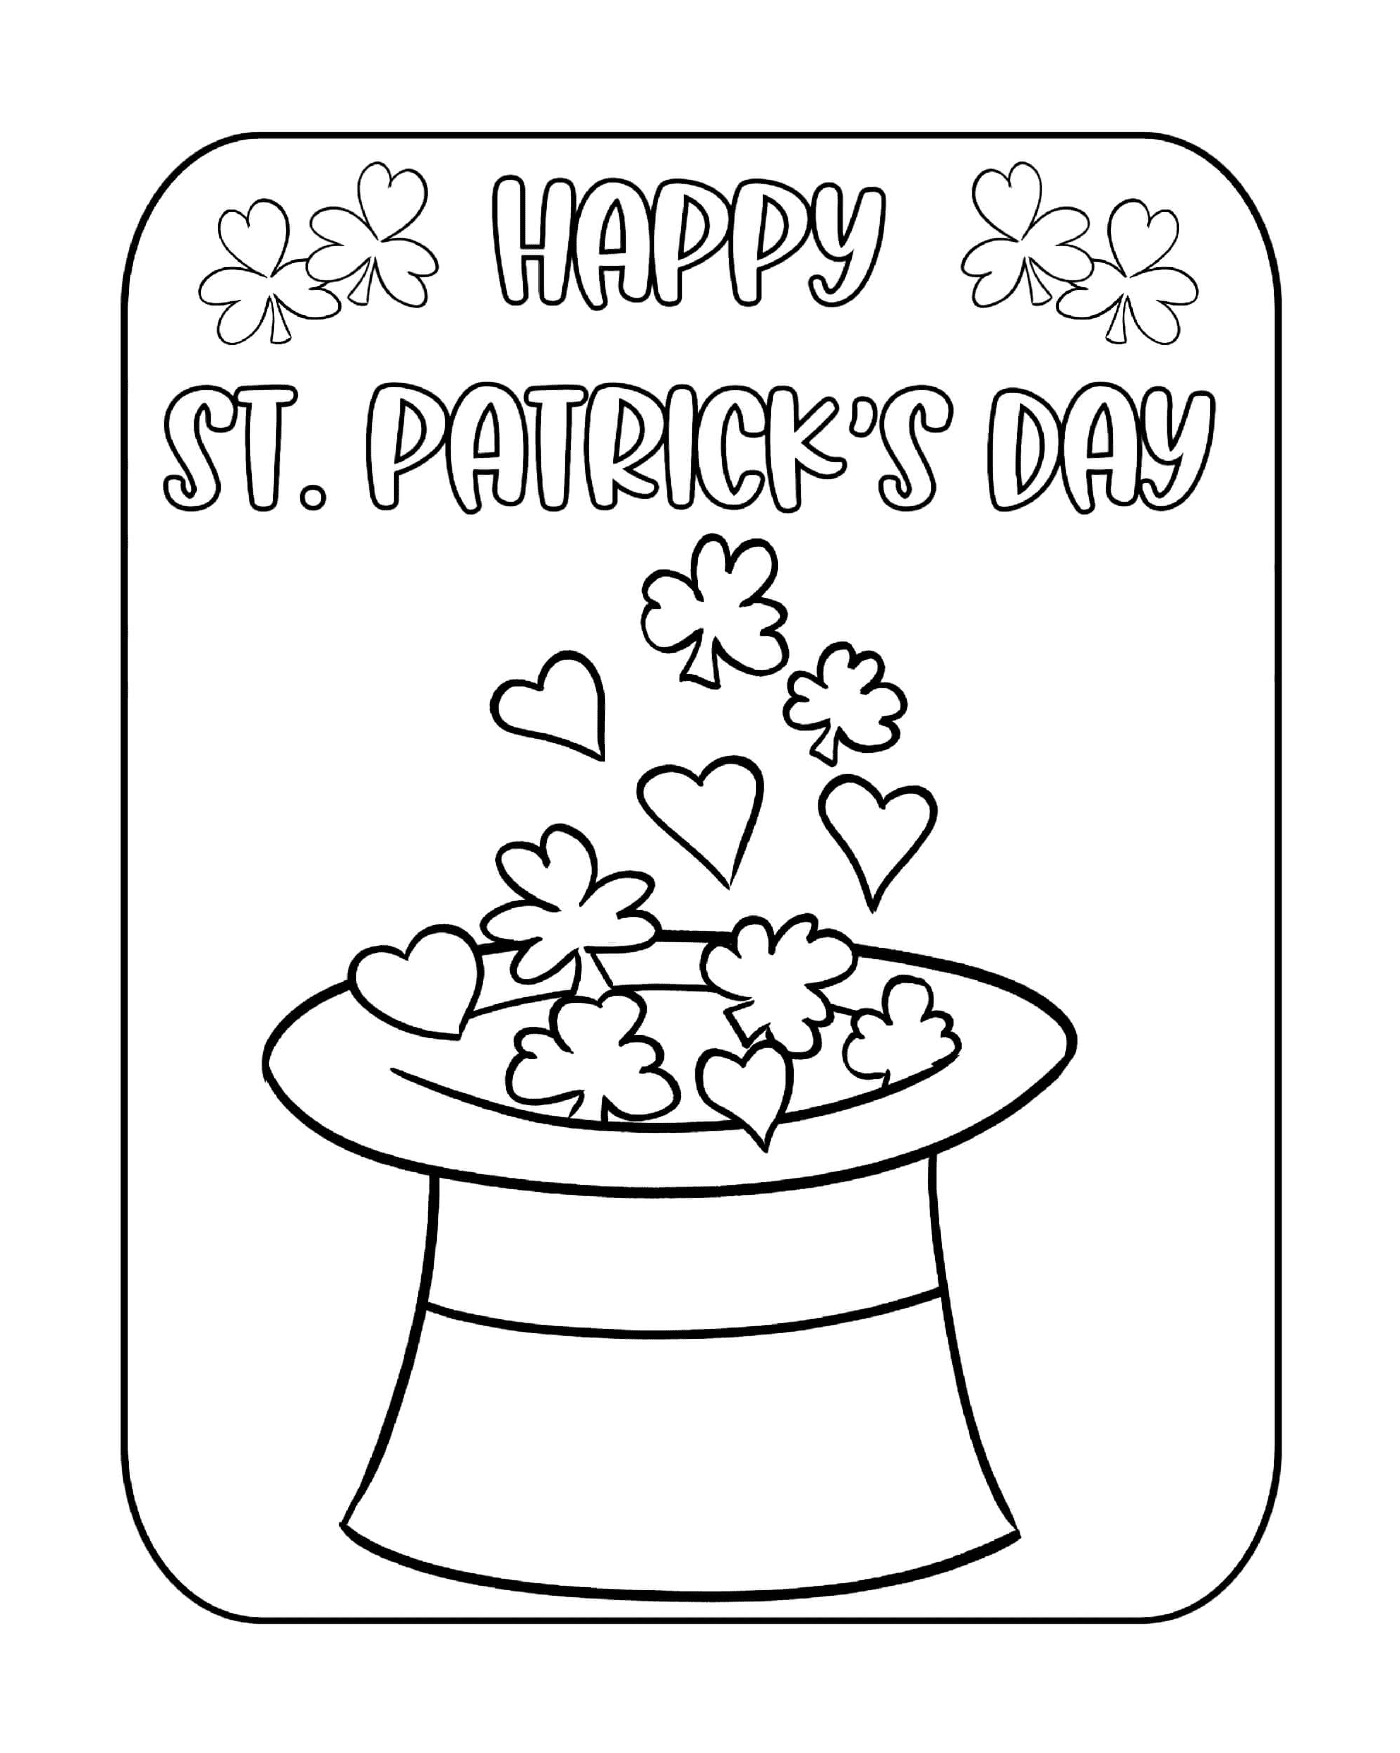 coloriage la saint patrick en irlande celebree durant cinq jours